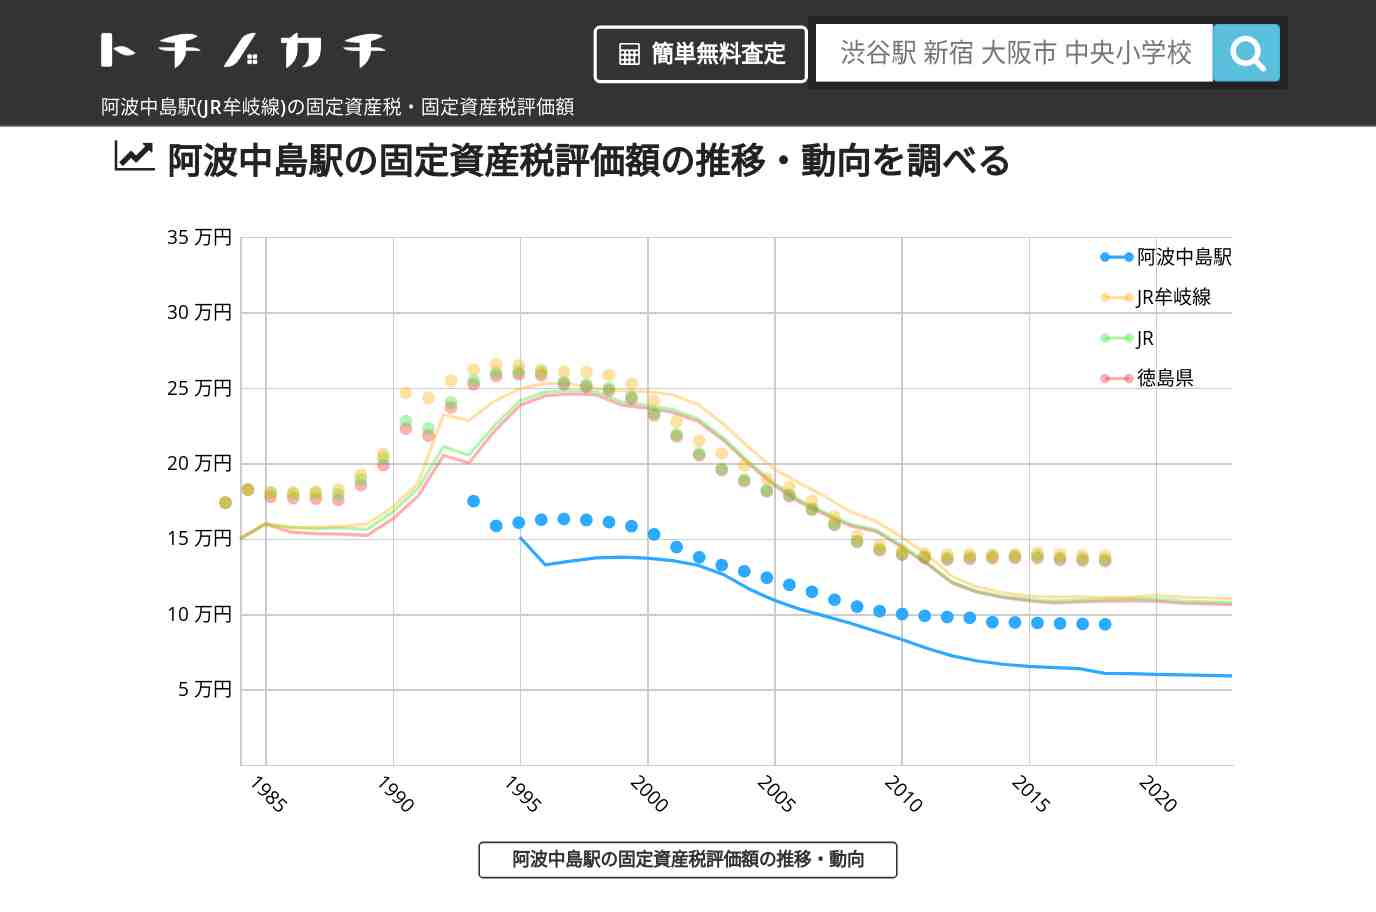 阿波中島駅(JR牟岐線)の固定資産税・固定資産税評価額 | トチノカチ